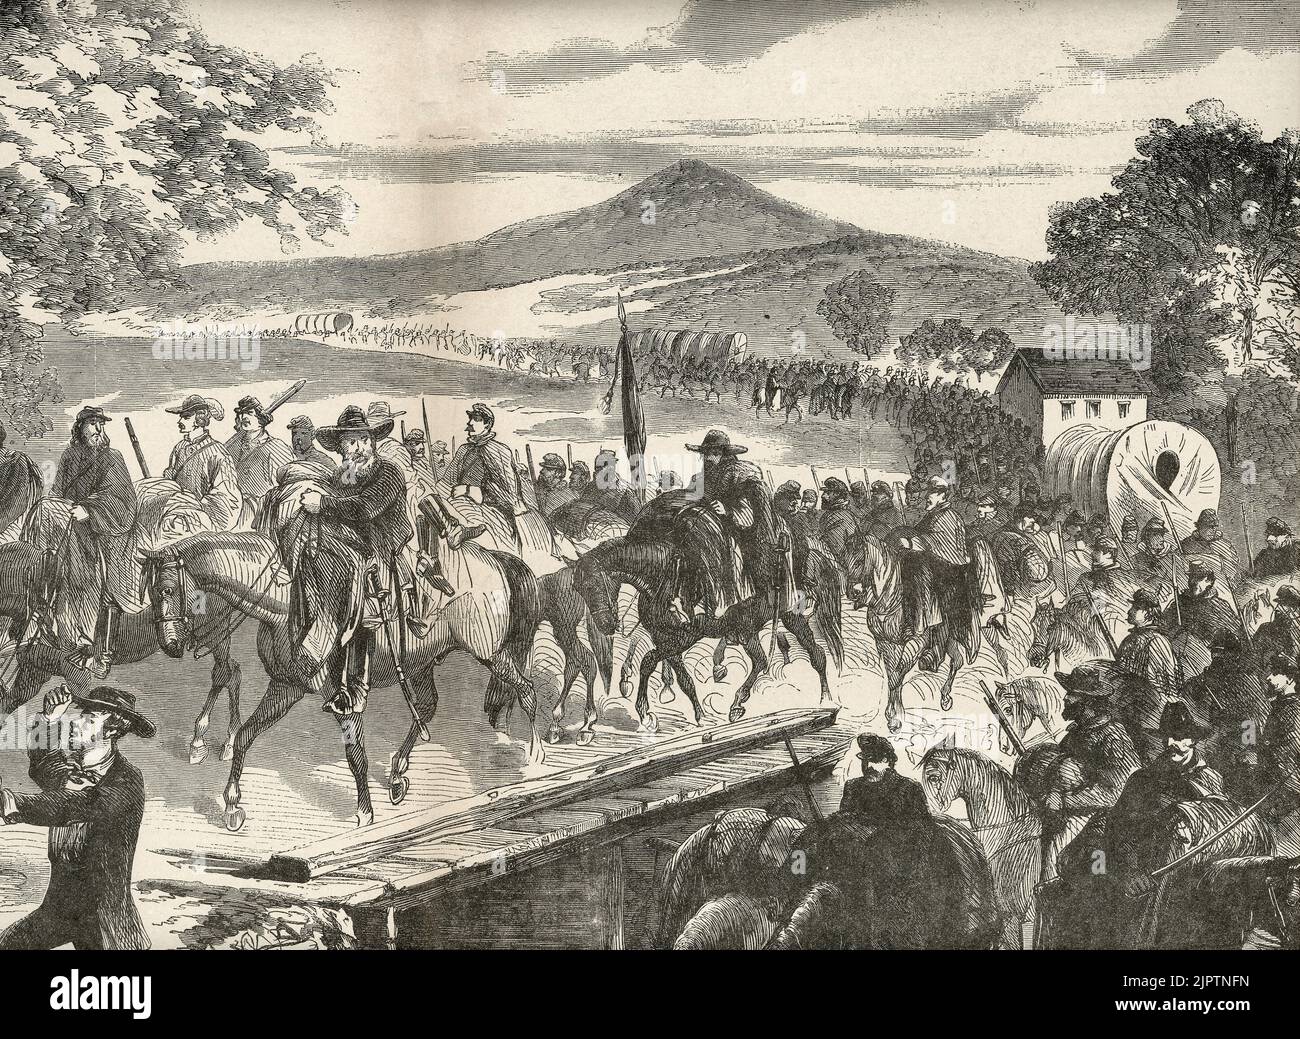 Le RAID de Rebel en Pennsylvanie - la cavalerie de Jeb Stuart sur leur chemin vers le Potomac - Guerre civile américaine, 1862 Banque D'Images